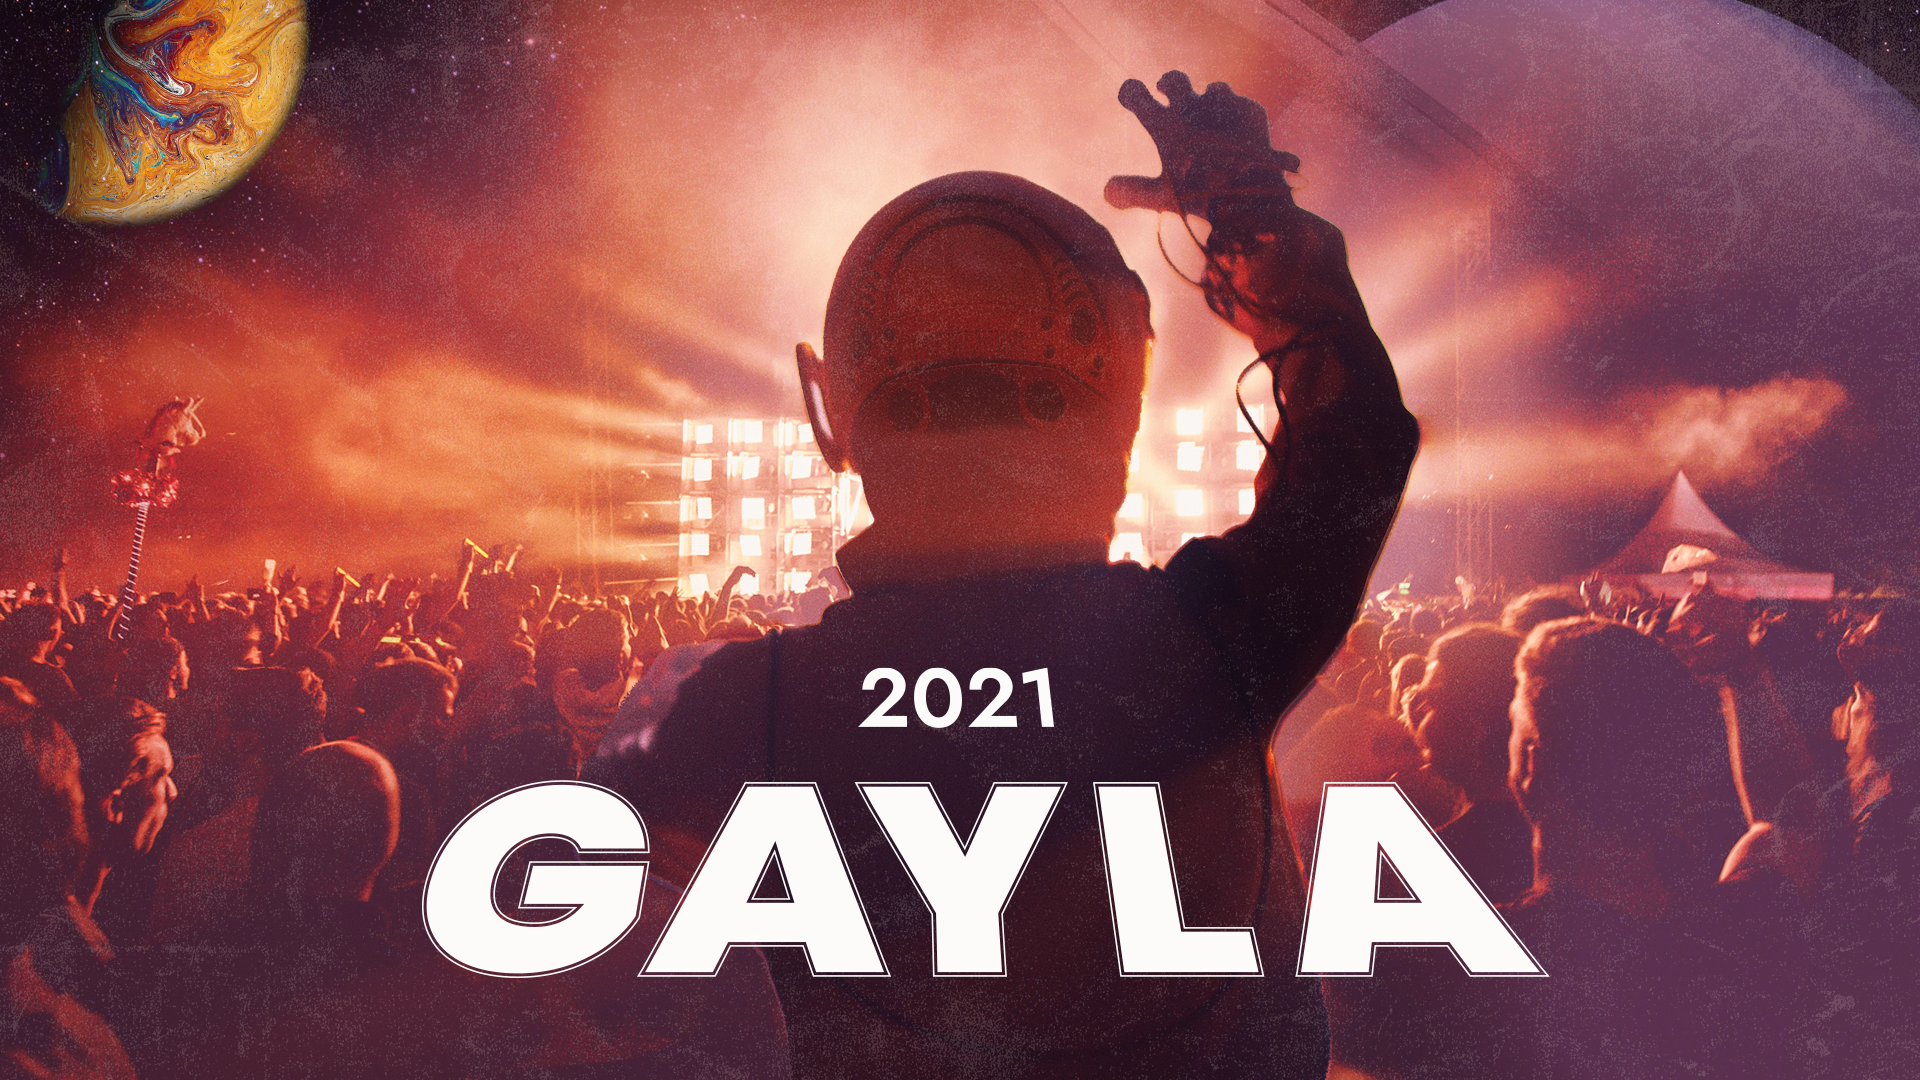 2021 GAYLA